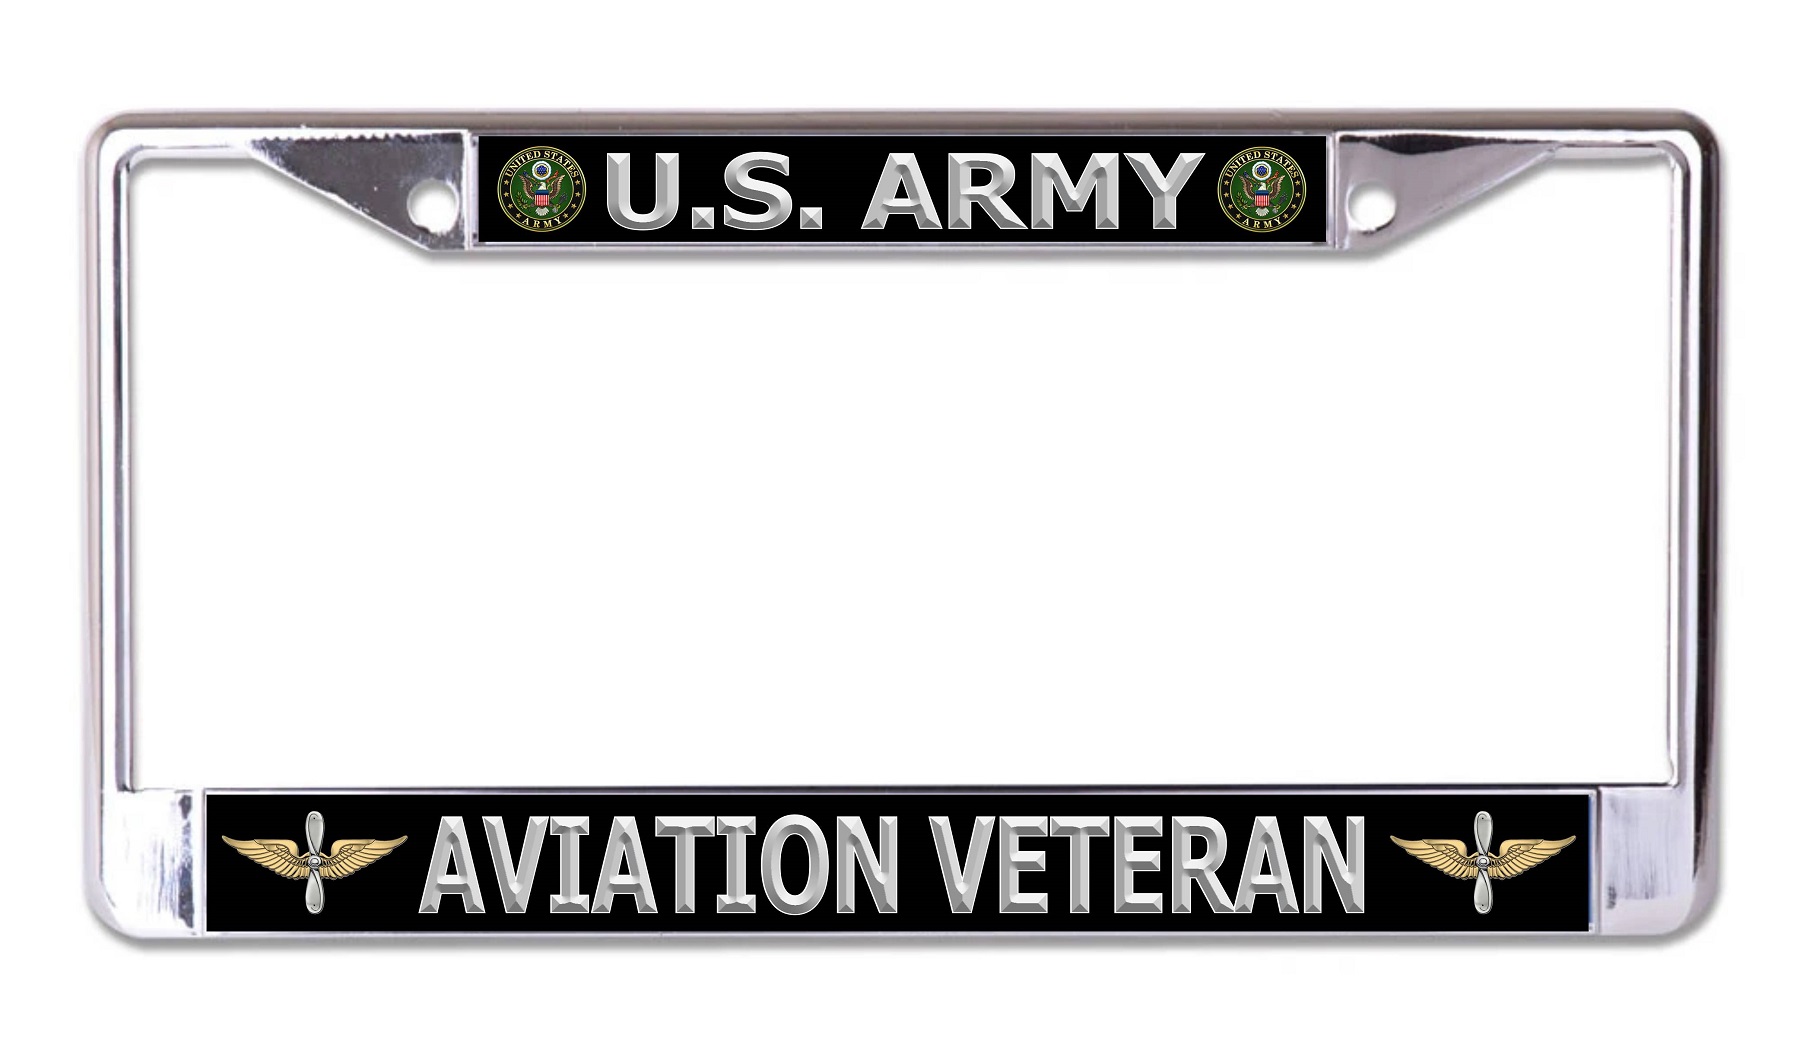 U.S. Army Aviation Veteran Chrome License Plate FRAME